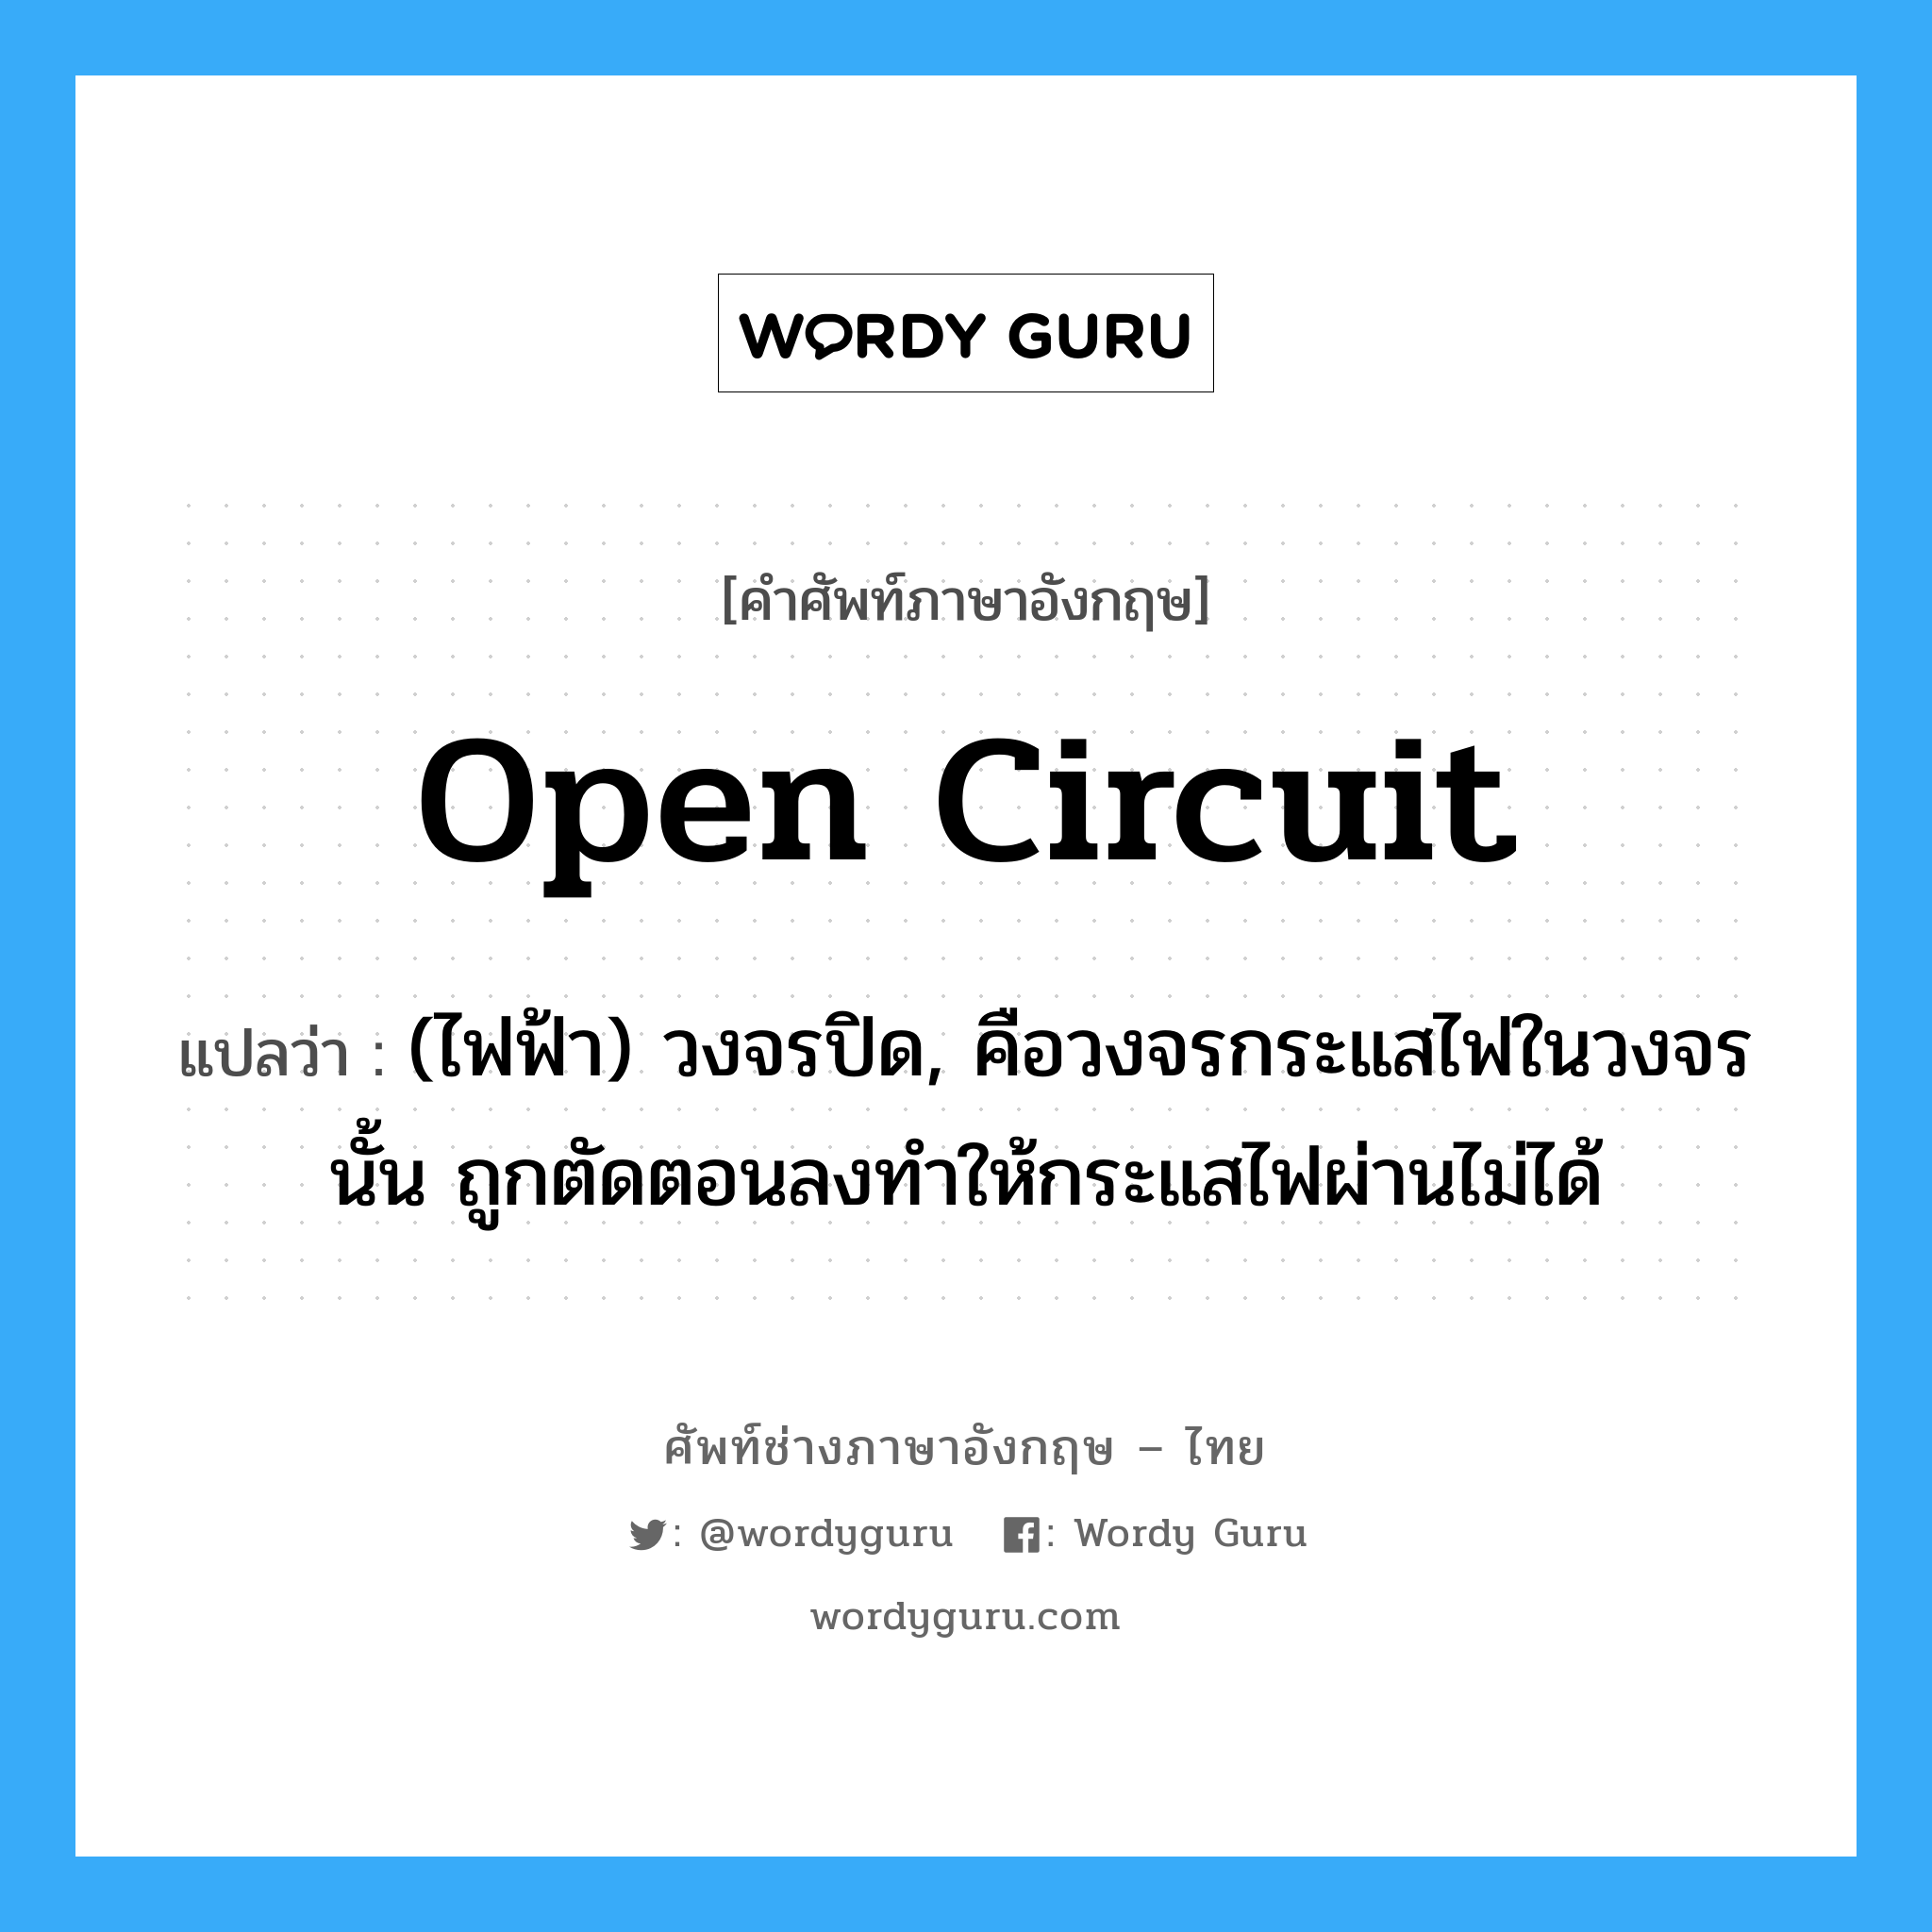 open circuit แปลว่า?, คำศัพท์ช่างภาษาอังกฤษ - ไทย open circuit คำศัพท์ภาษาอังกฤษ open circuit แปลว่า (ไฟฟ้า) วงจรปิด, คือวงจรกระแสไฟในวงจรนั้น ถูกตัดตอนลงทำให้กระแสไฟผ่านไม่ได้